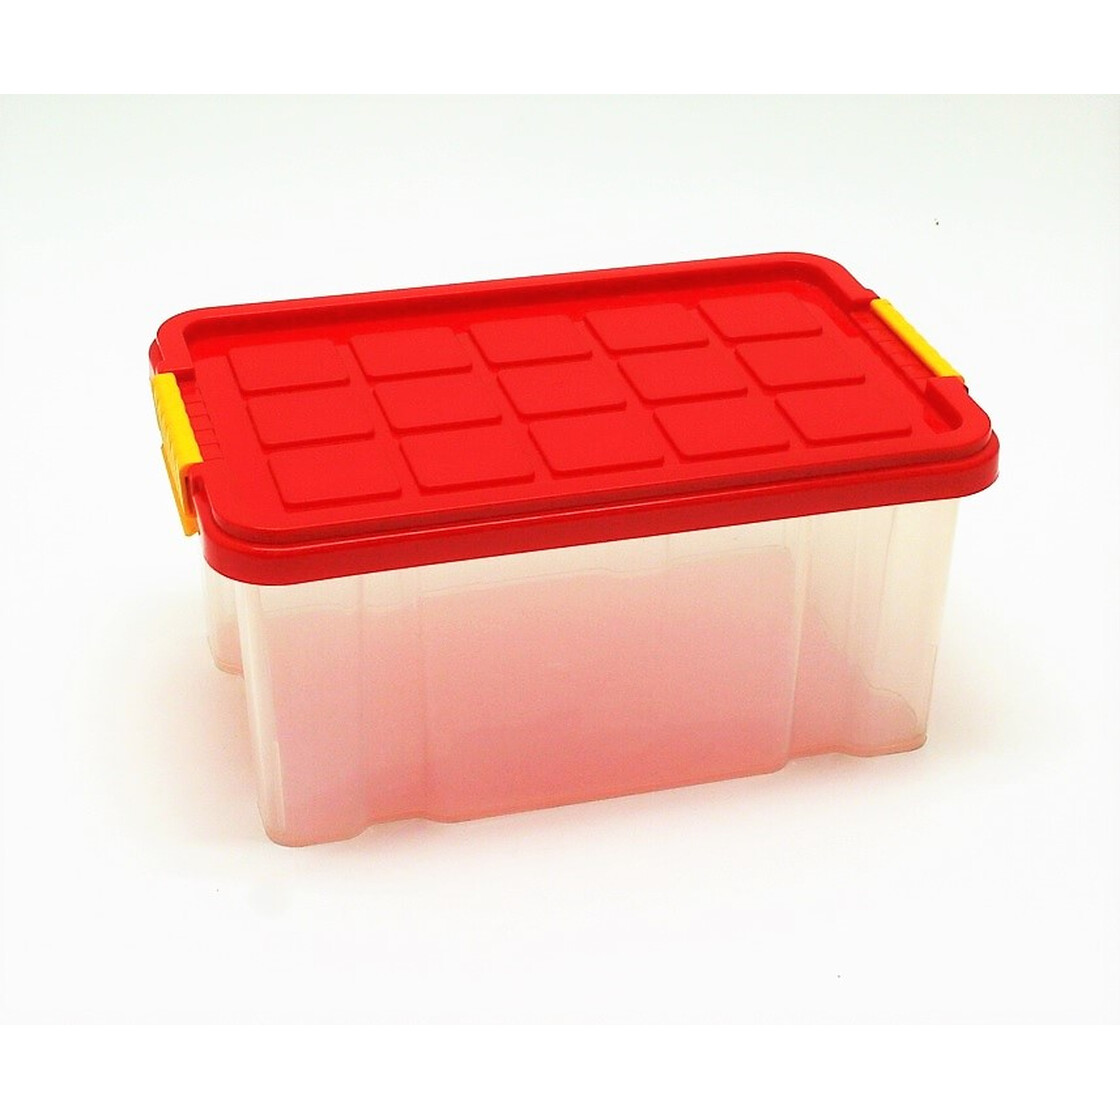 Box klein mit farbigem Deckel 30 x 19 x 14 cm 5 Liter